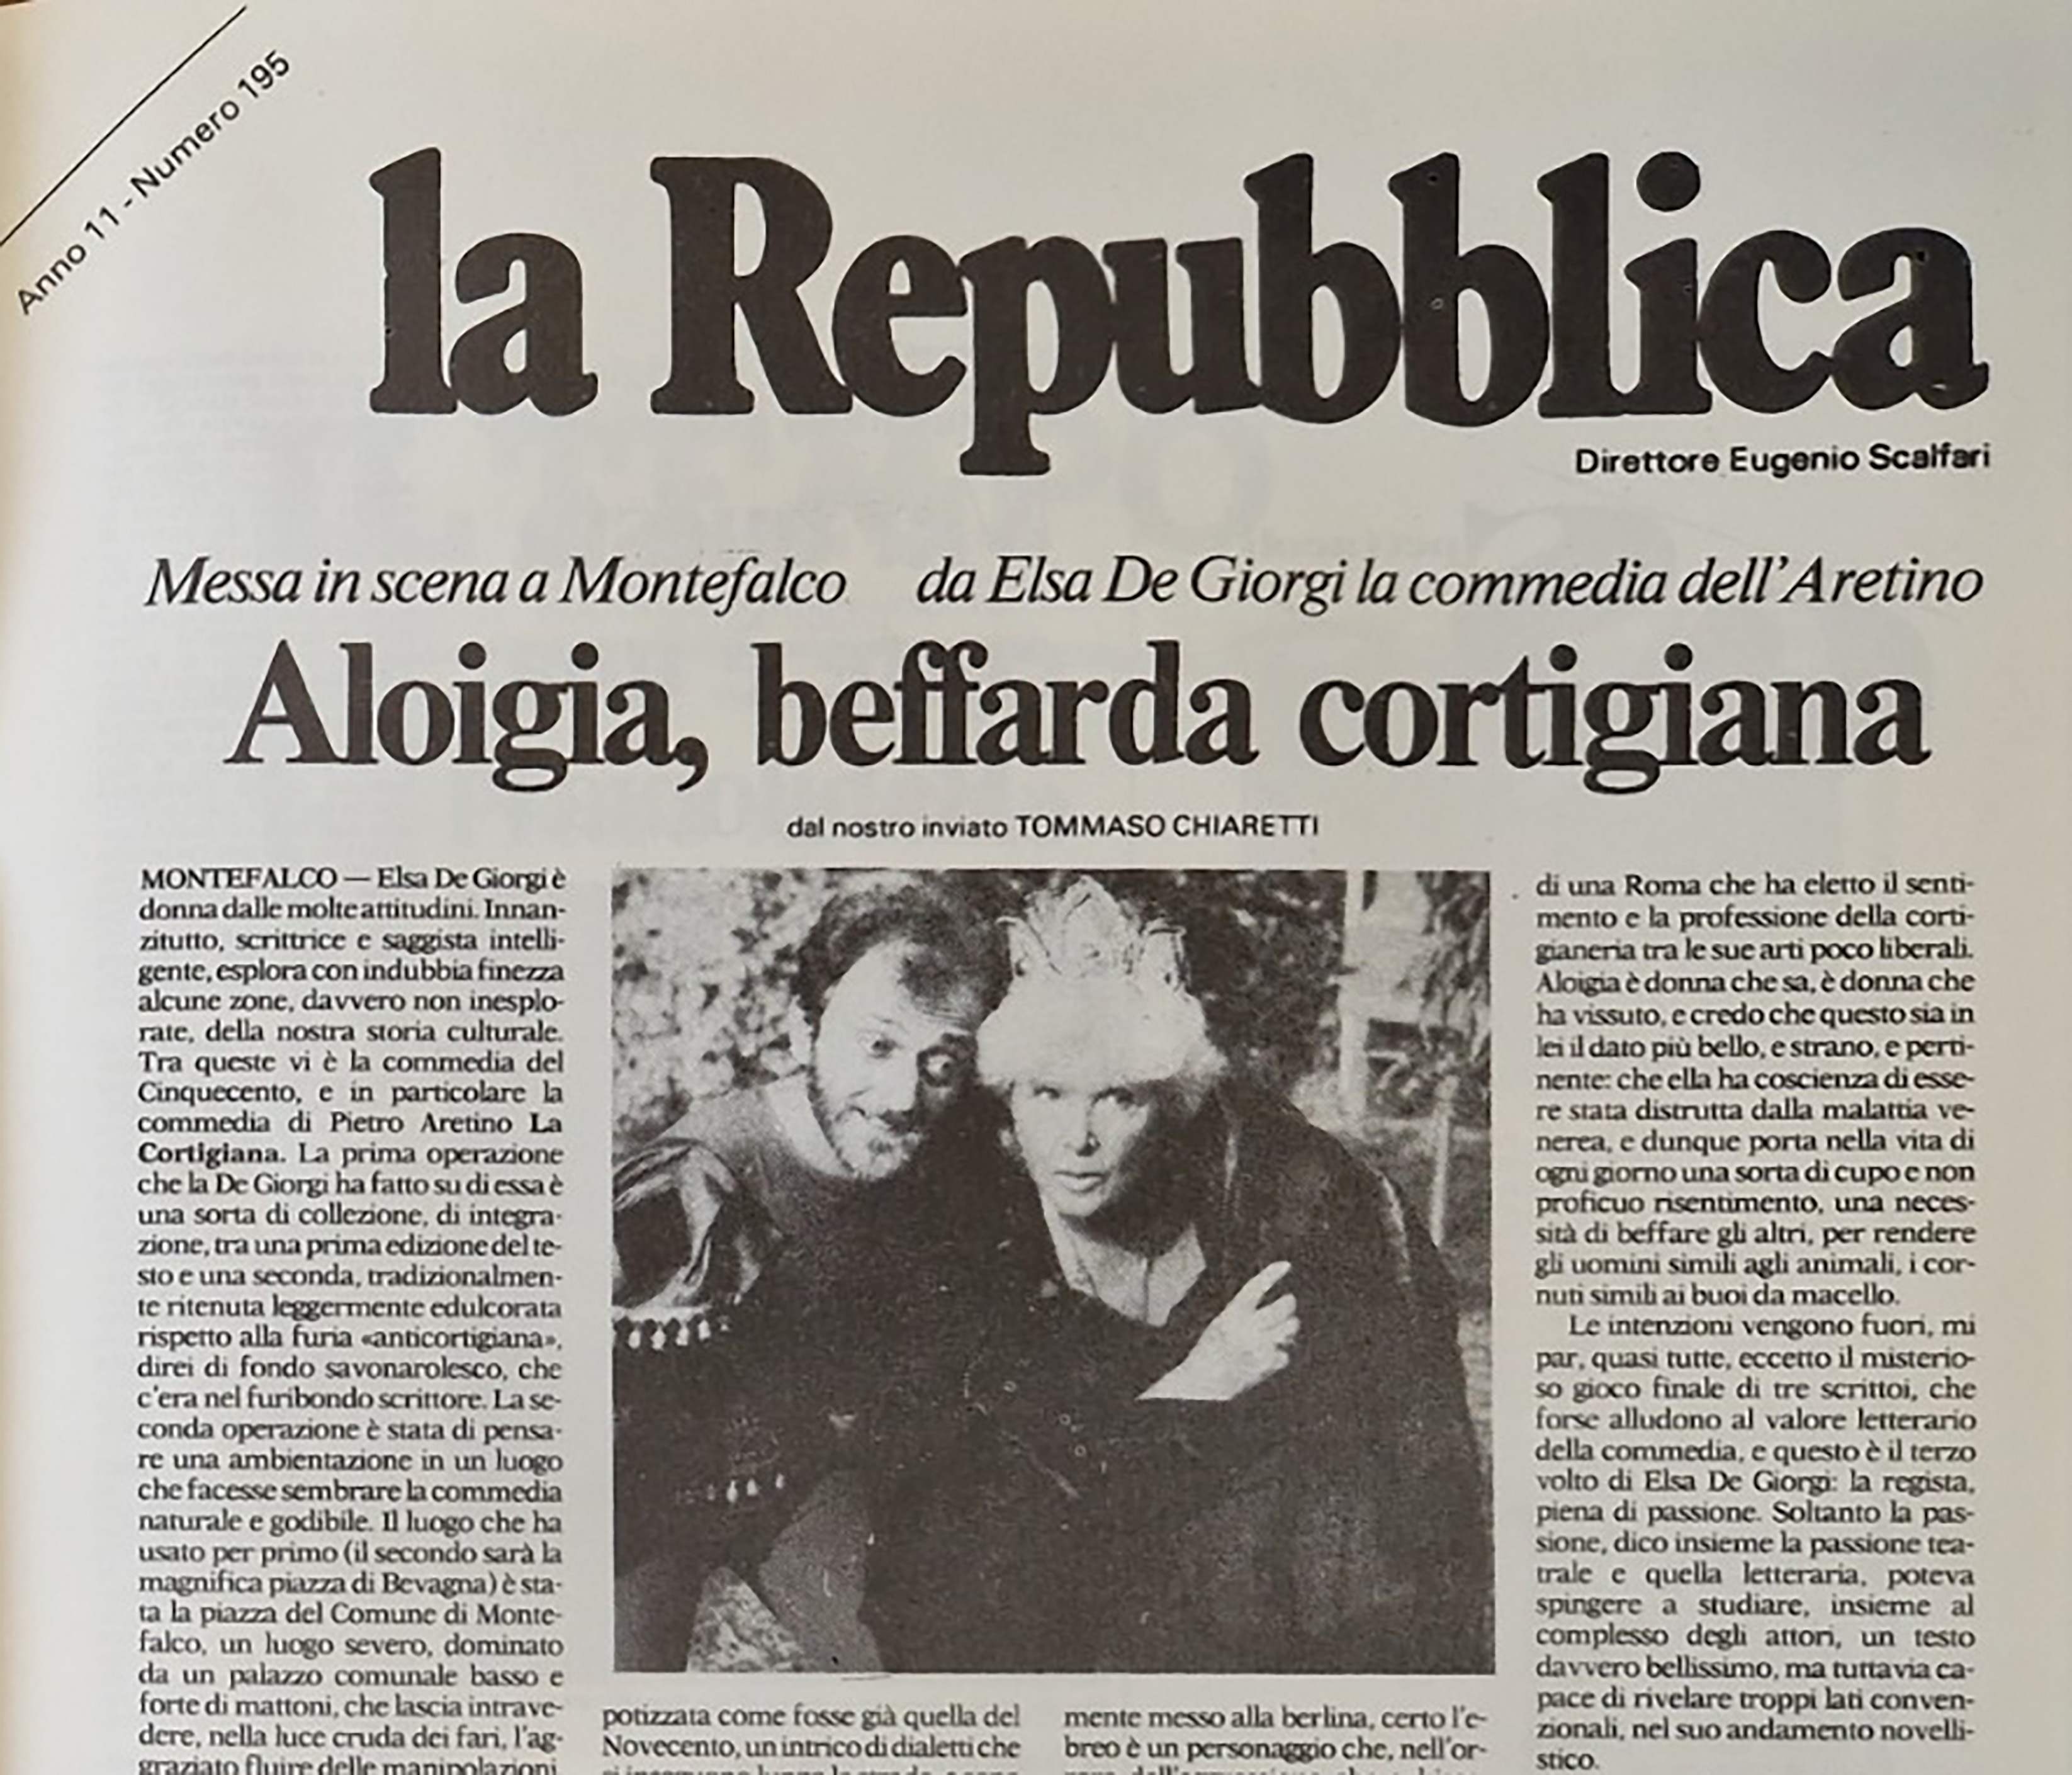 Frammento di un articolo tratto da La Repubblica in cui compare una foto che ritrae Elsa de’ Giorgi e Andrea Cagliesi in La Cortigiana, 1986